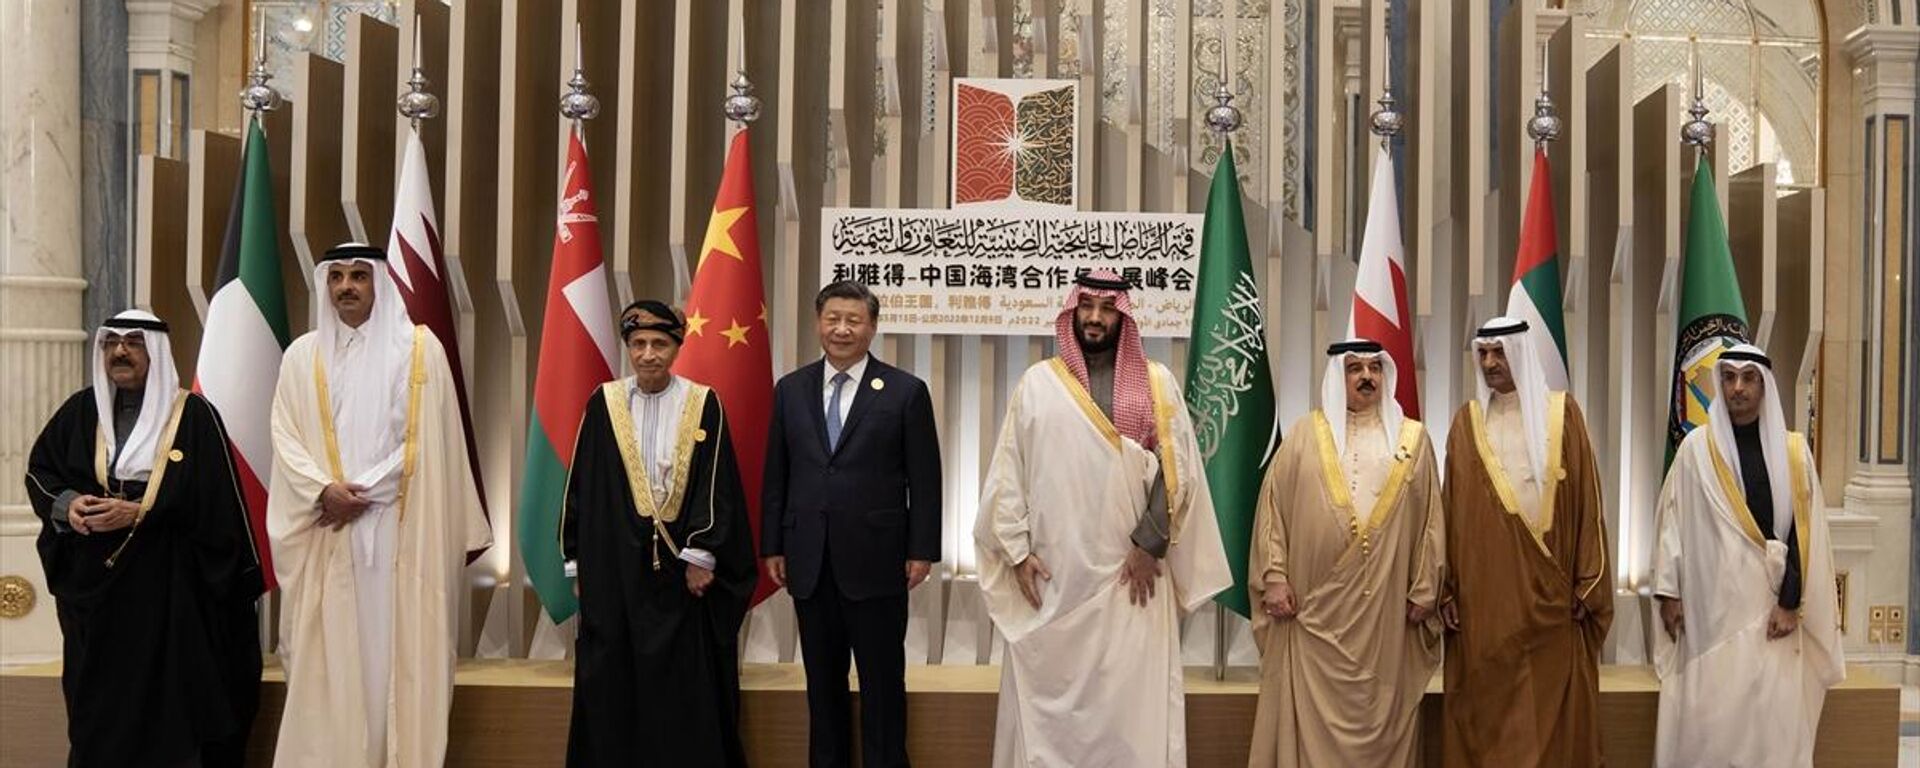 Suudi Arabistan'ın başkenti Riyad'taki Uluslararası Kral Abdulaziz Konferans Merkezi'nde Çin-Arap Ülkeleri Zirvesi düzenlendi - Sputnik Türkiye, 1920, 09.12.2022